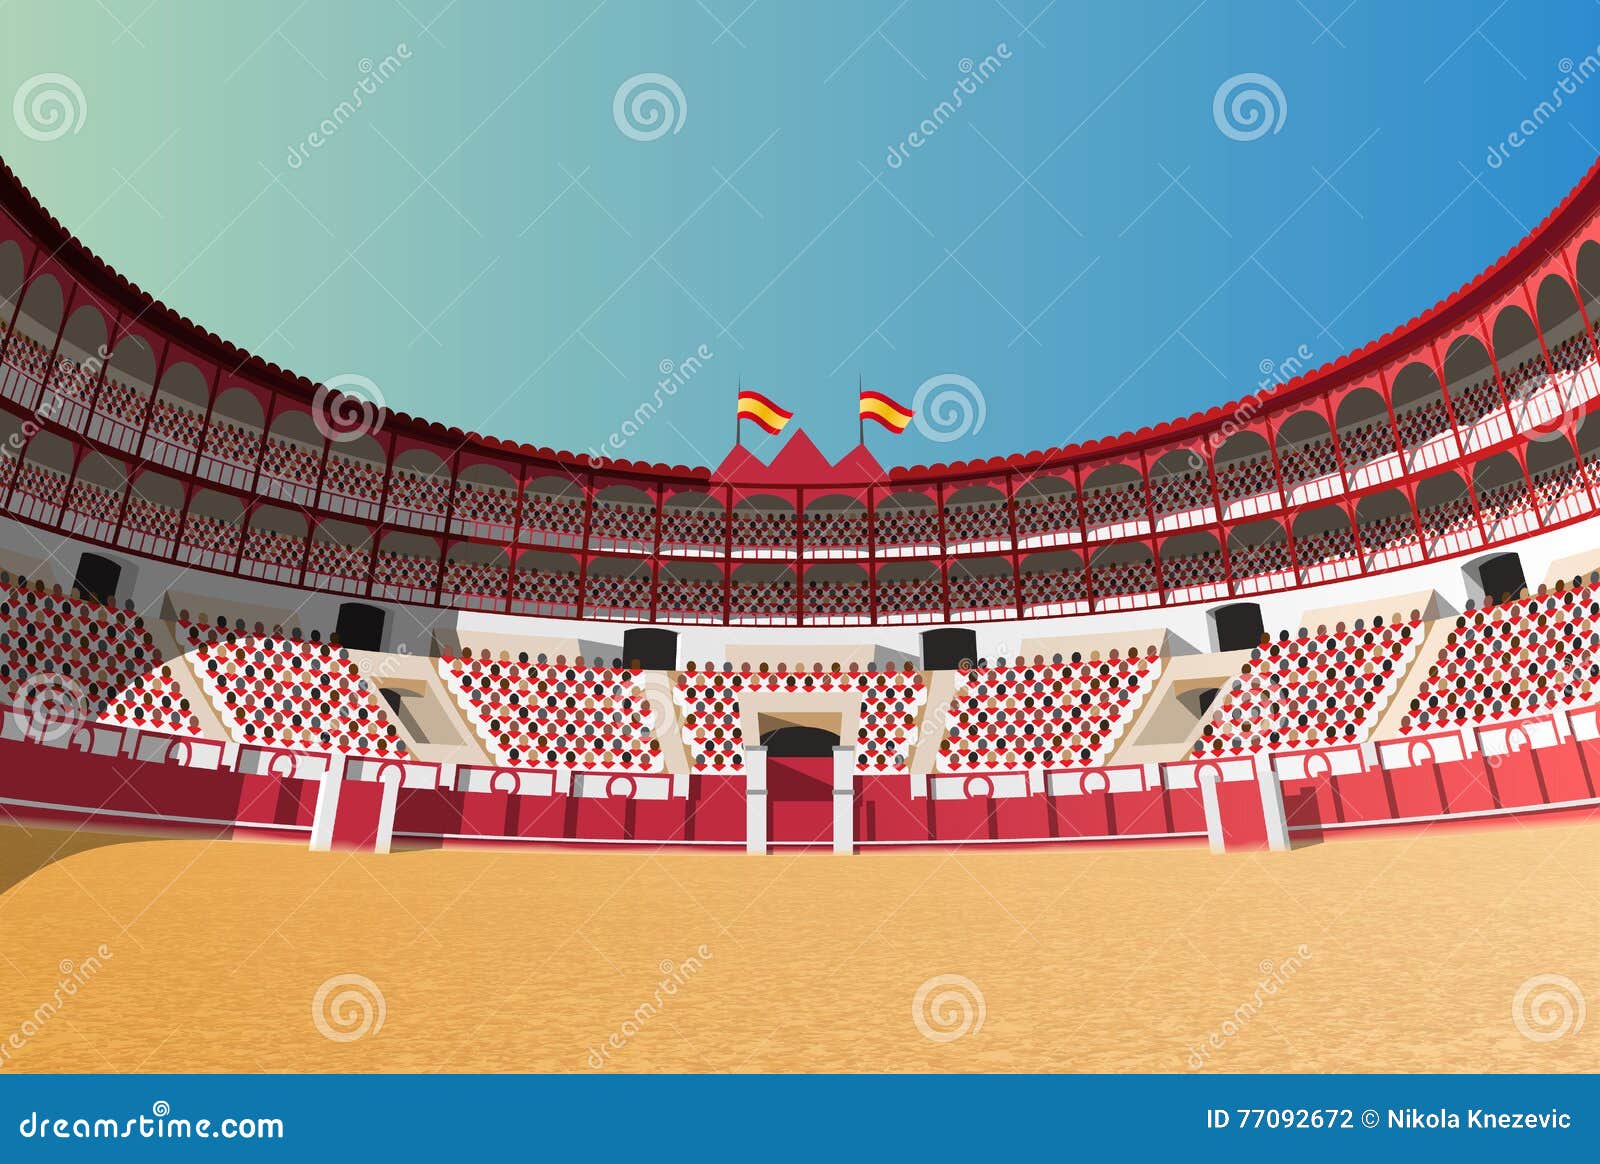 spanish bullfight arena